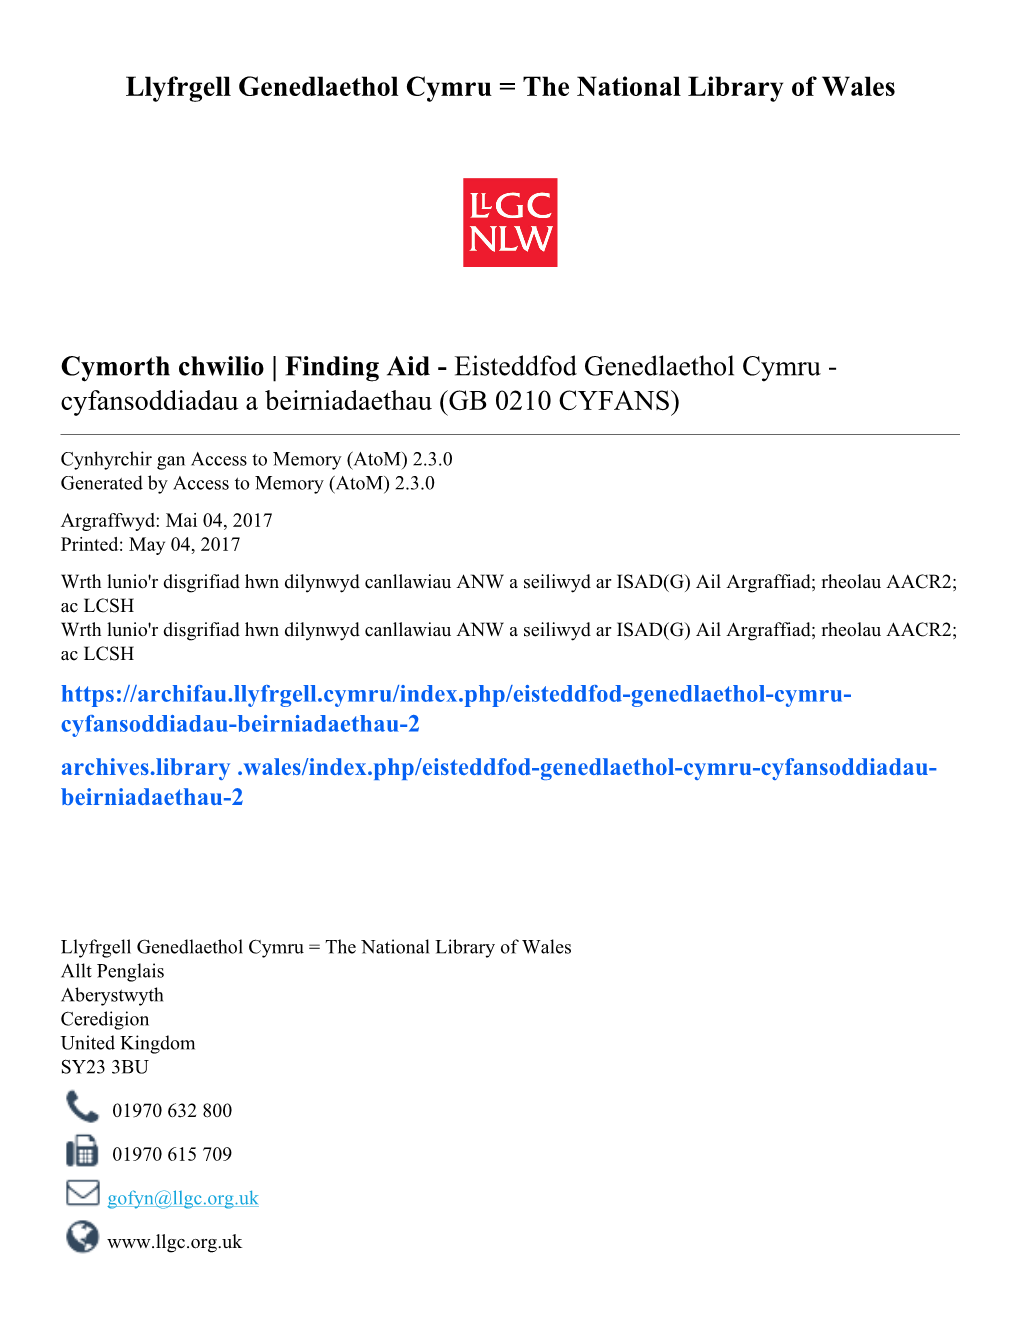 Eisteddfod Genedlaethol Cymru - Cyfansoddiadau a Beirniadaethau (GB 0210 CYFANS)